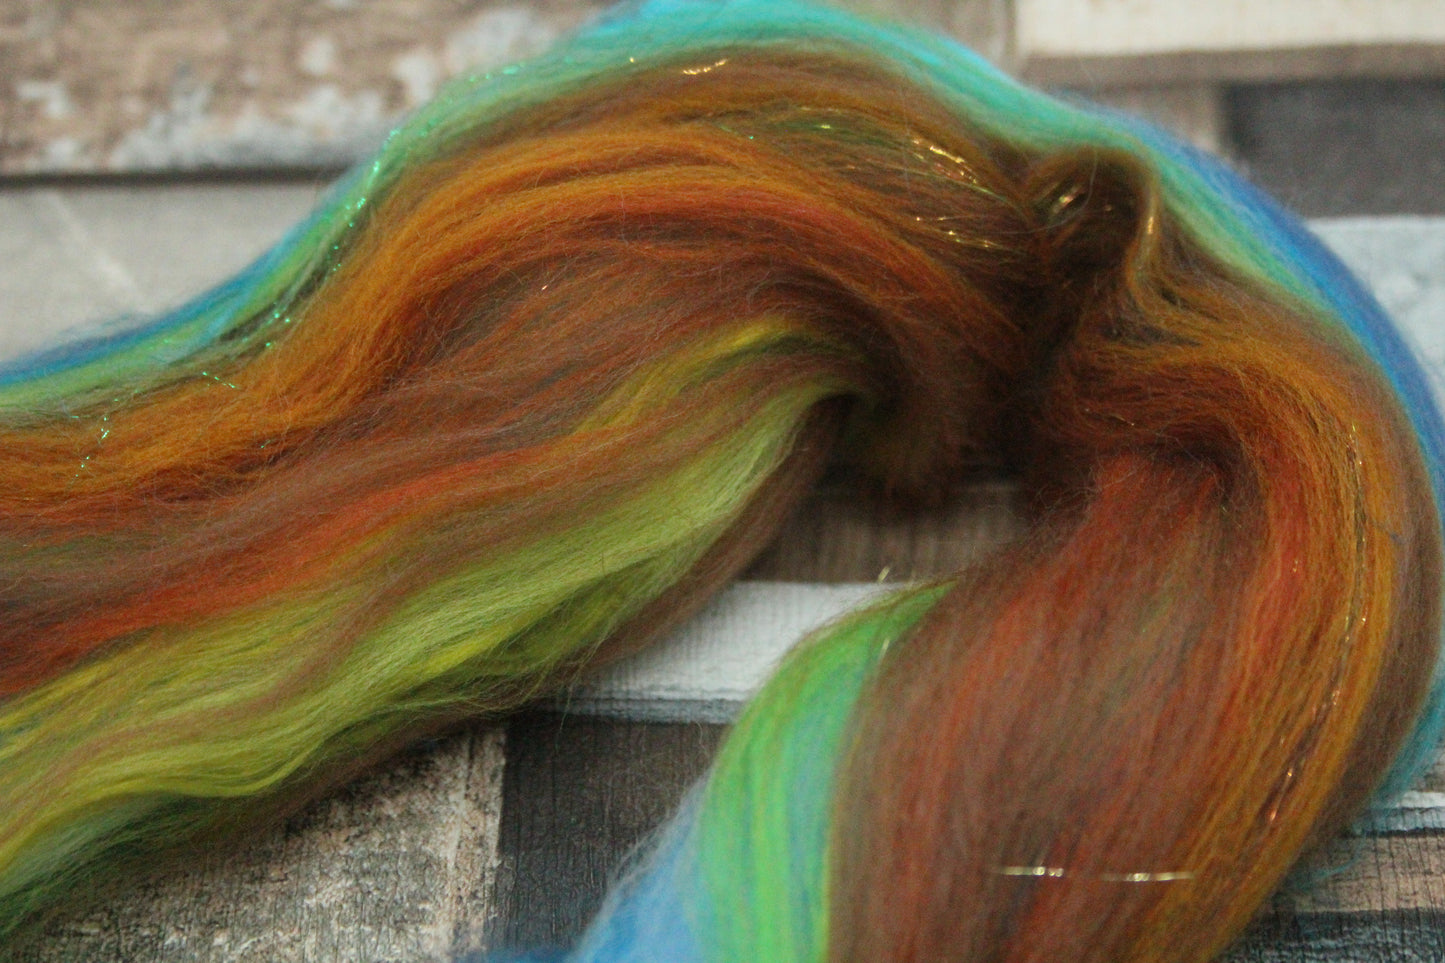 Merino Wool Blend - Brown Green Blue - 15 grams / 0.5 oz  - Fibre for felting, weaving or spinning